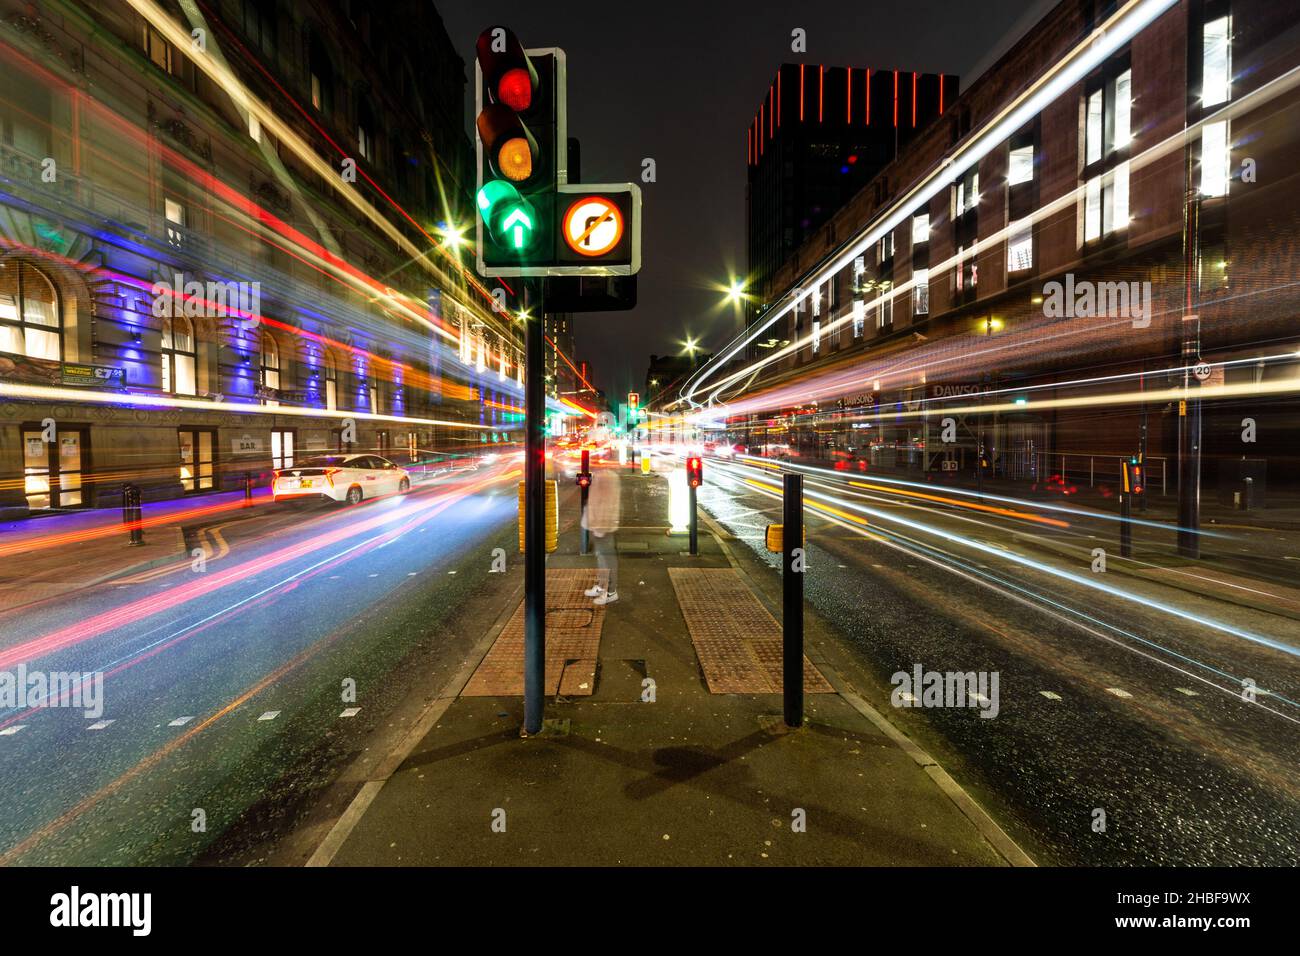 Des pistes lumineuses à longue exposition depuis les bus et autres véhicules en mouvement sur Portland Street, Manchester, Angleterre, Royaume-Uni Banque D'Images